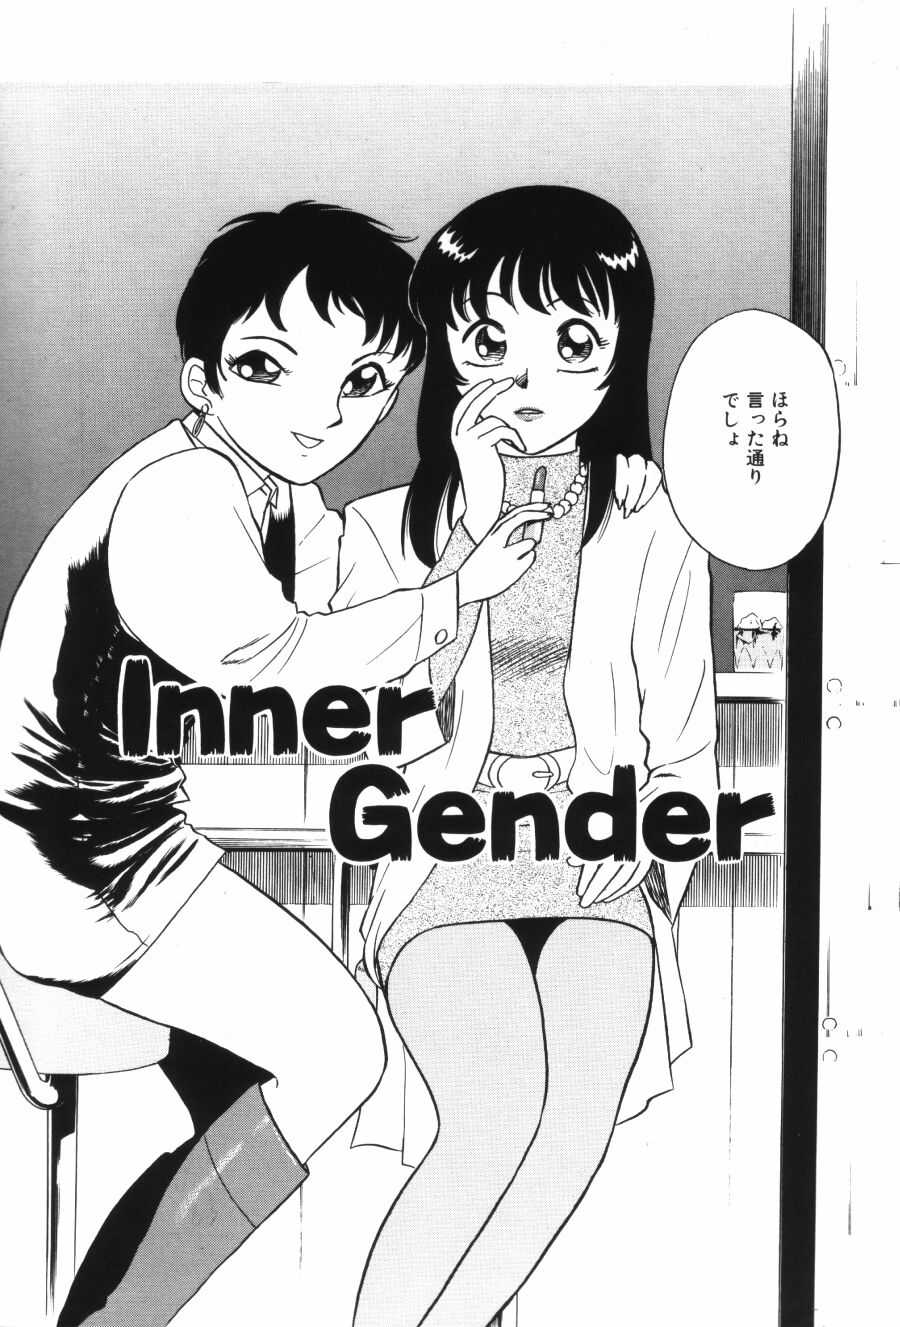 Ai wa Kagi no Kazudake - Inner Gender [Minami Tomoko &amp; Kyon] futa 